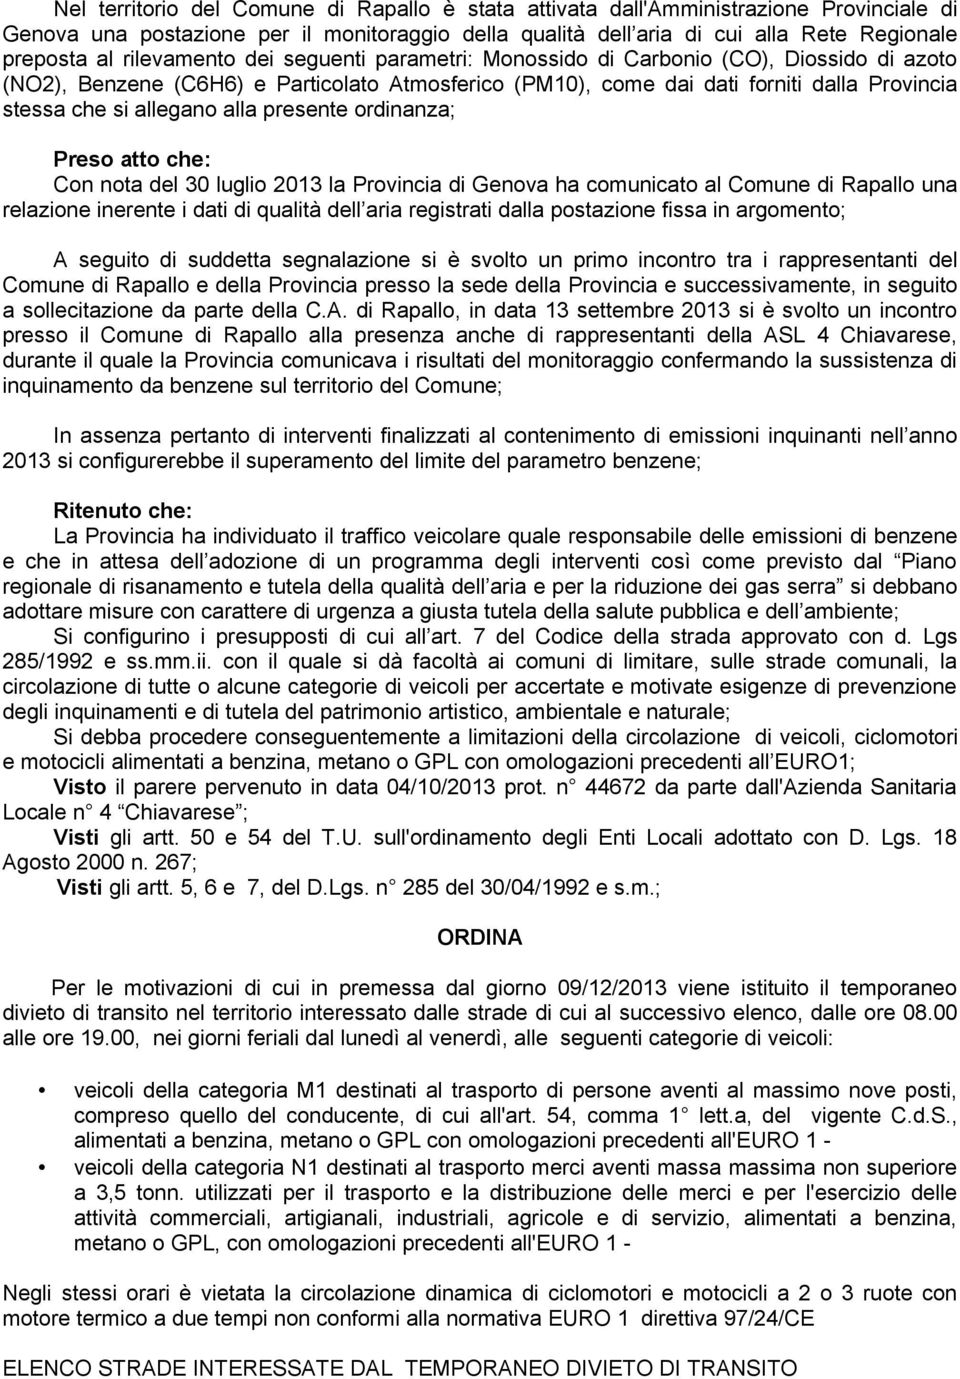 alla presente ordinanza; Preso atto che: Con nota del 30 luglio 2013 la Provincia di Genova ha comunicato al Comune di Rapallo una relazione inerente i dati di qualità dell aria registrati dalla